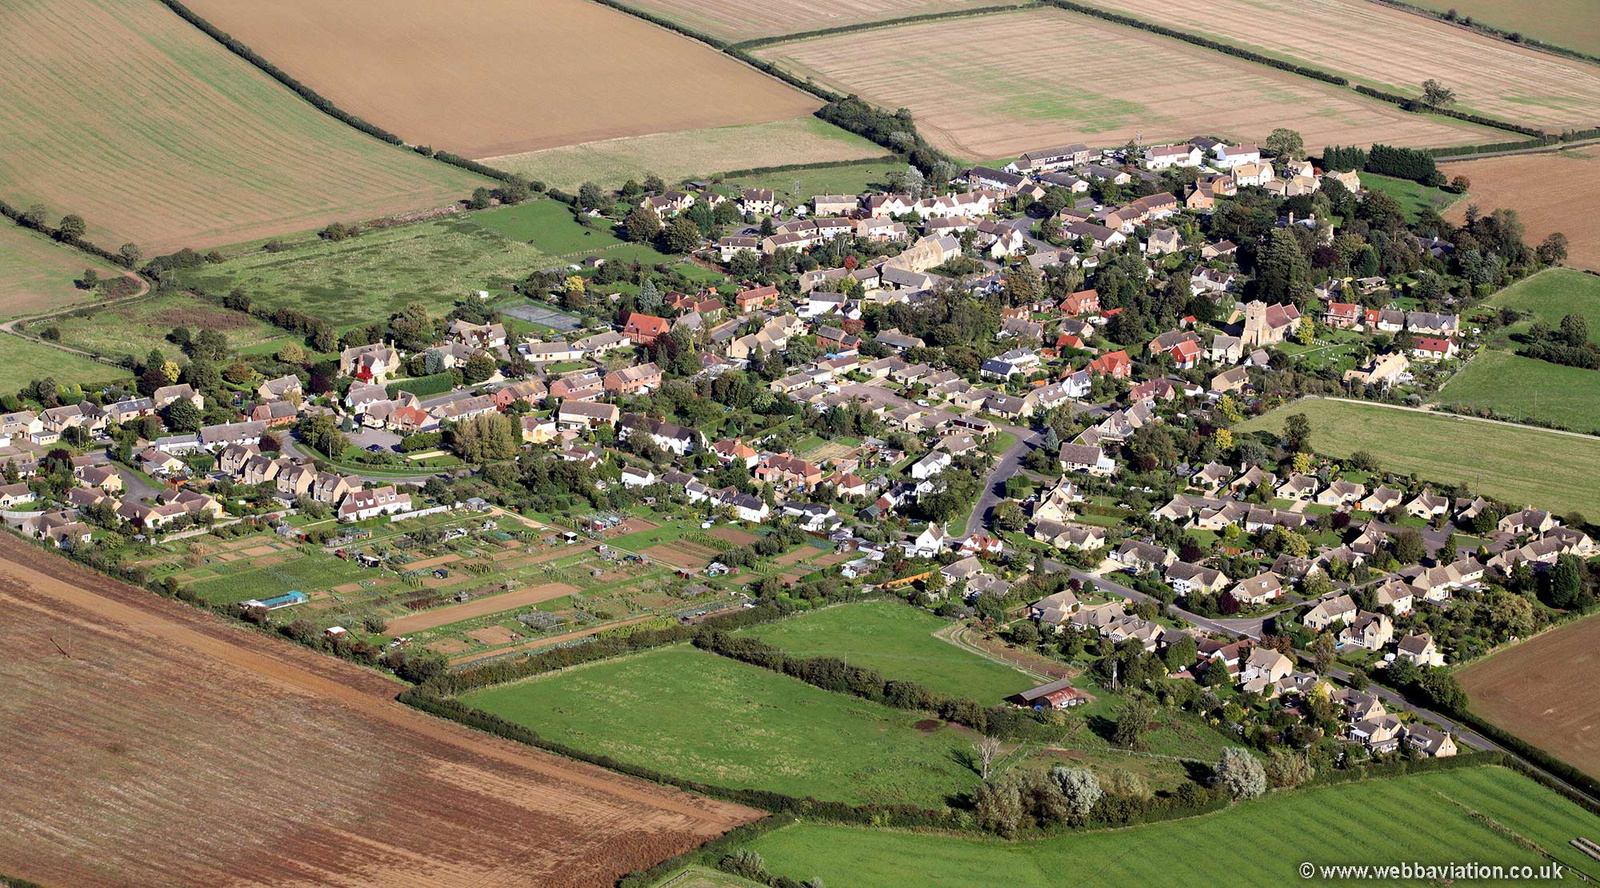 Alderton aerial photograph